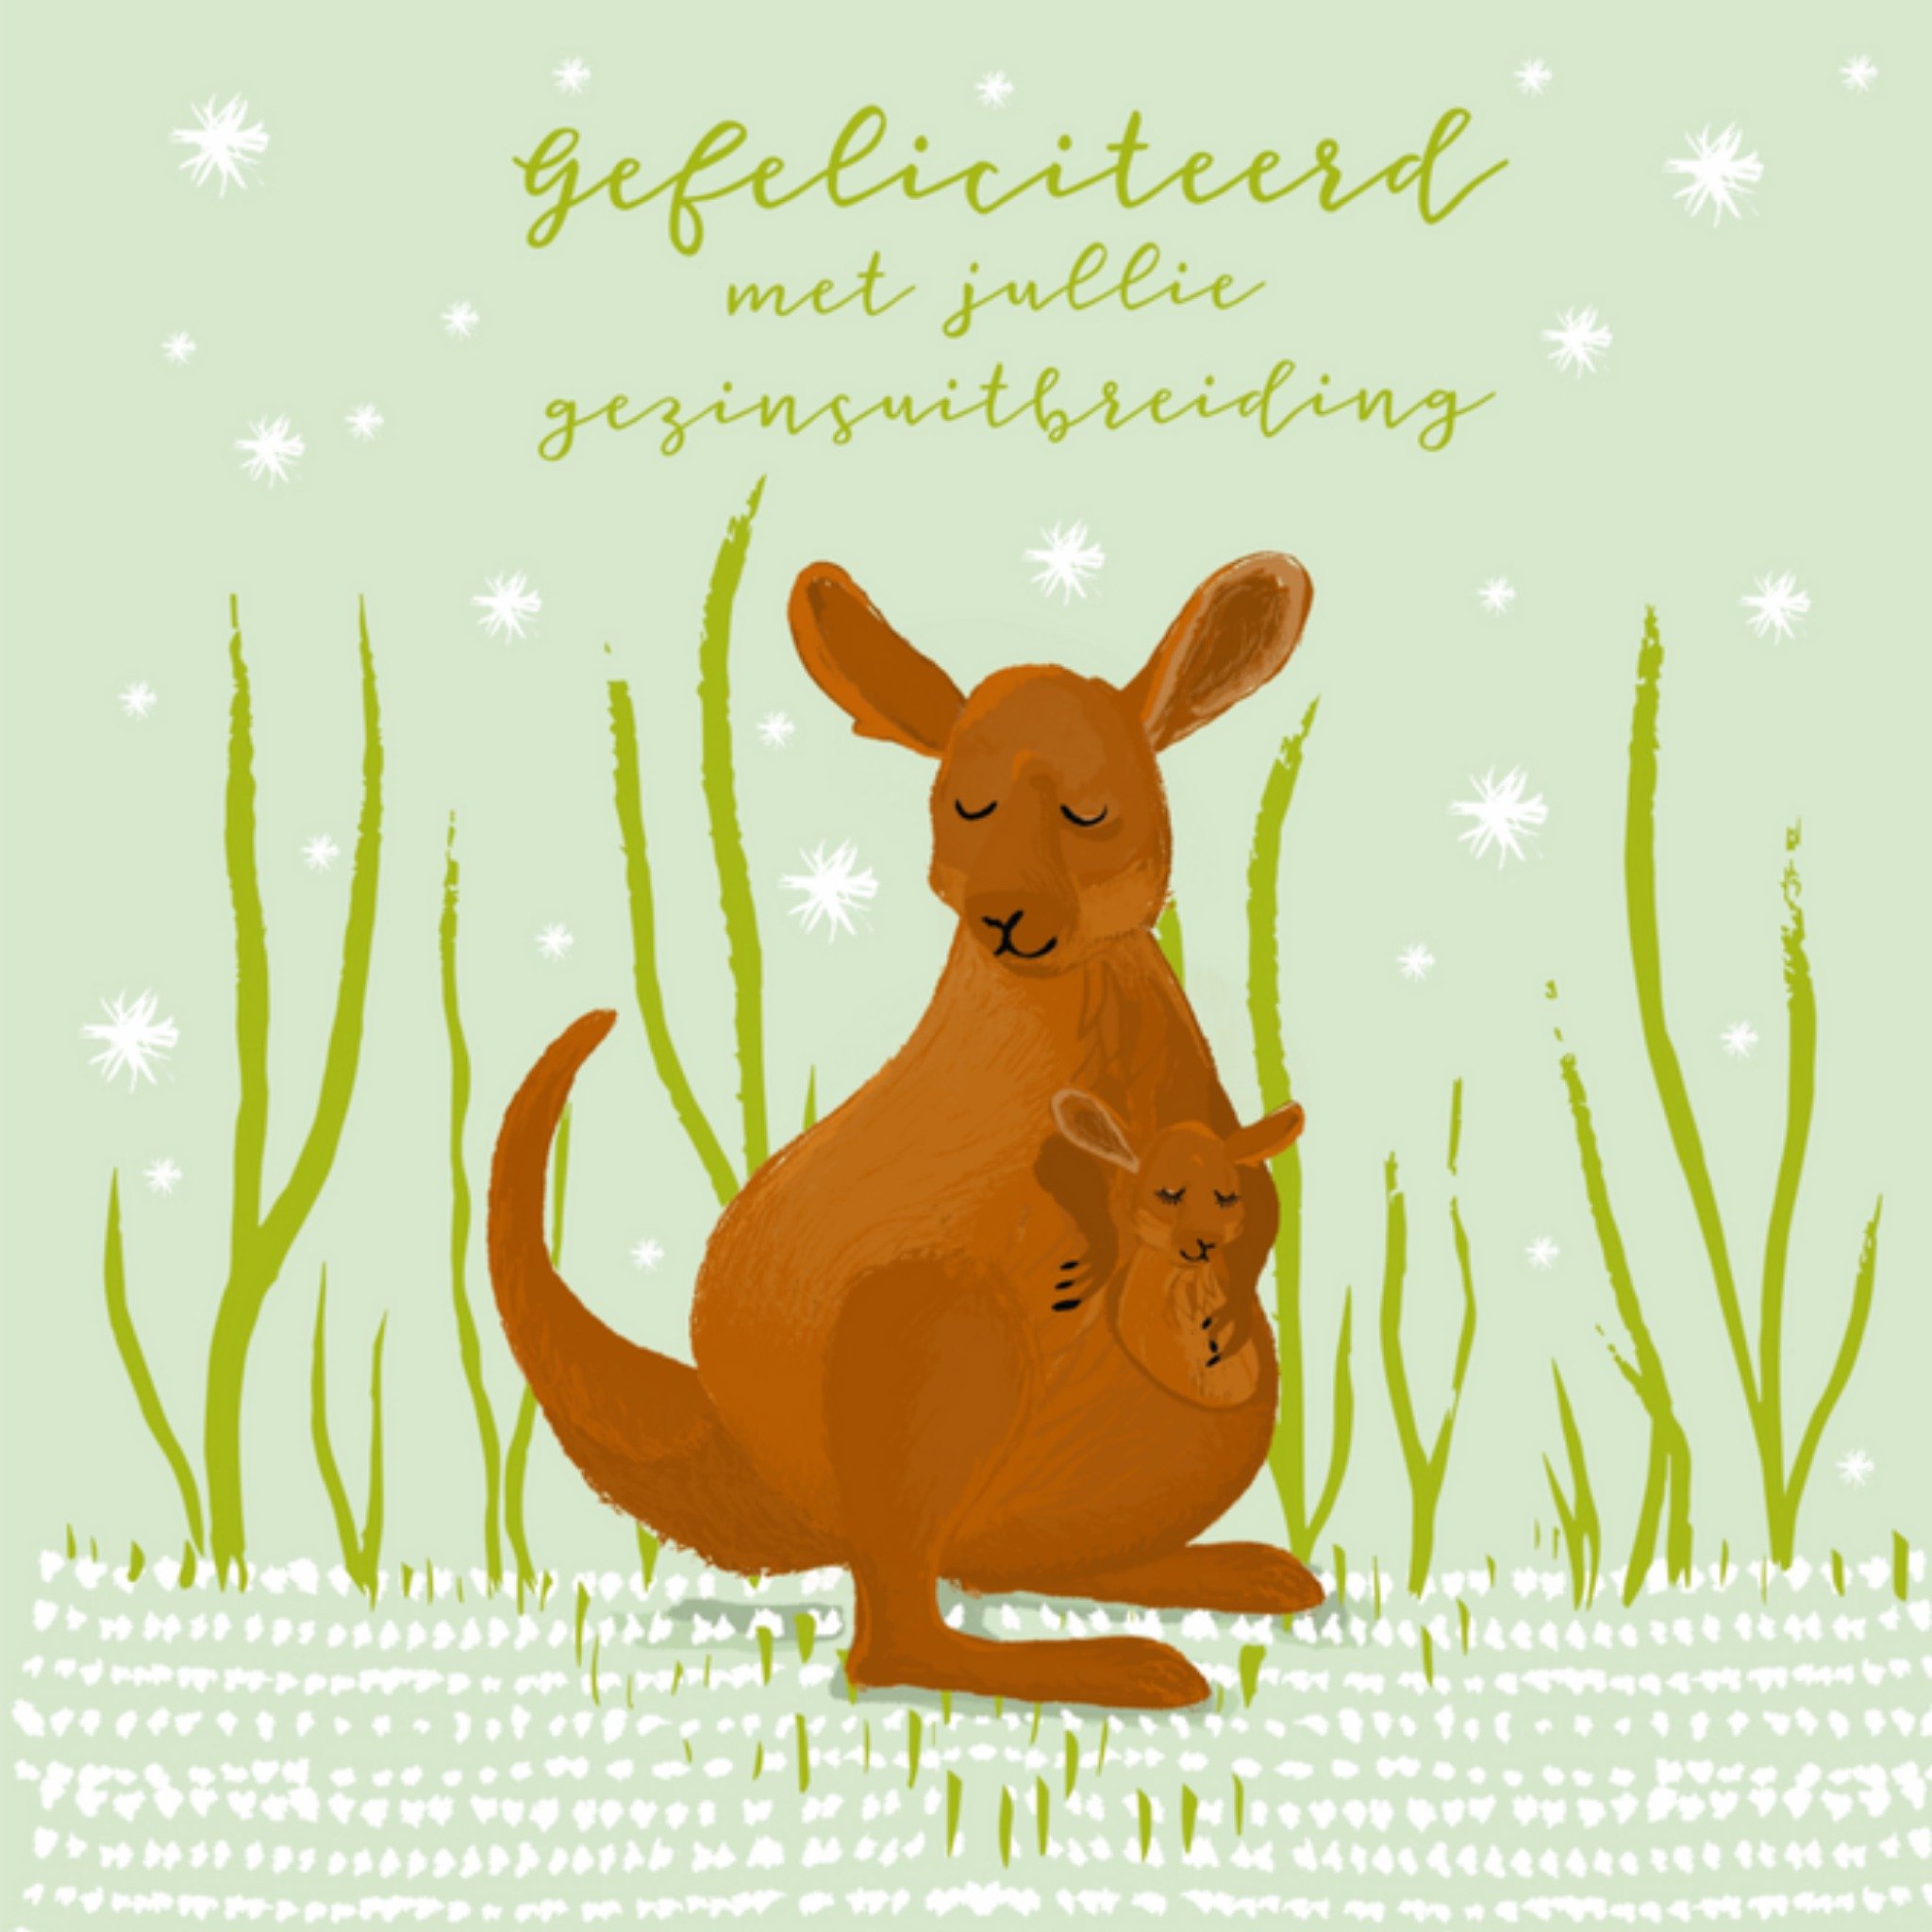 Paperclip - Geboortekaart - kangaroo